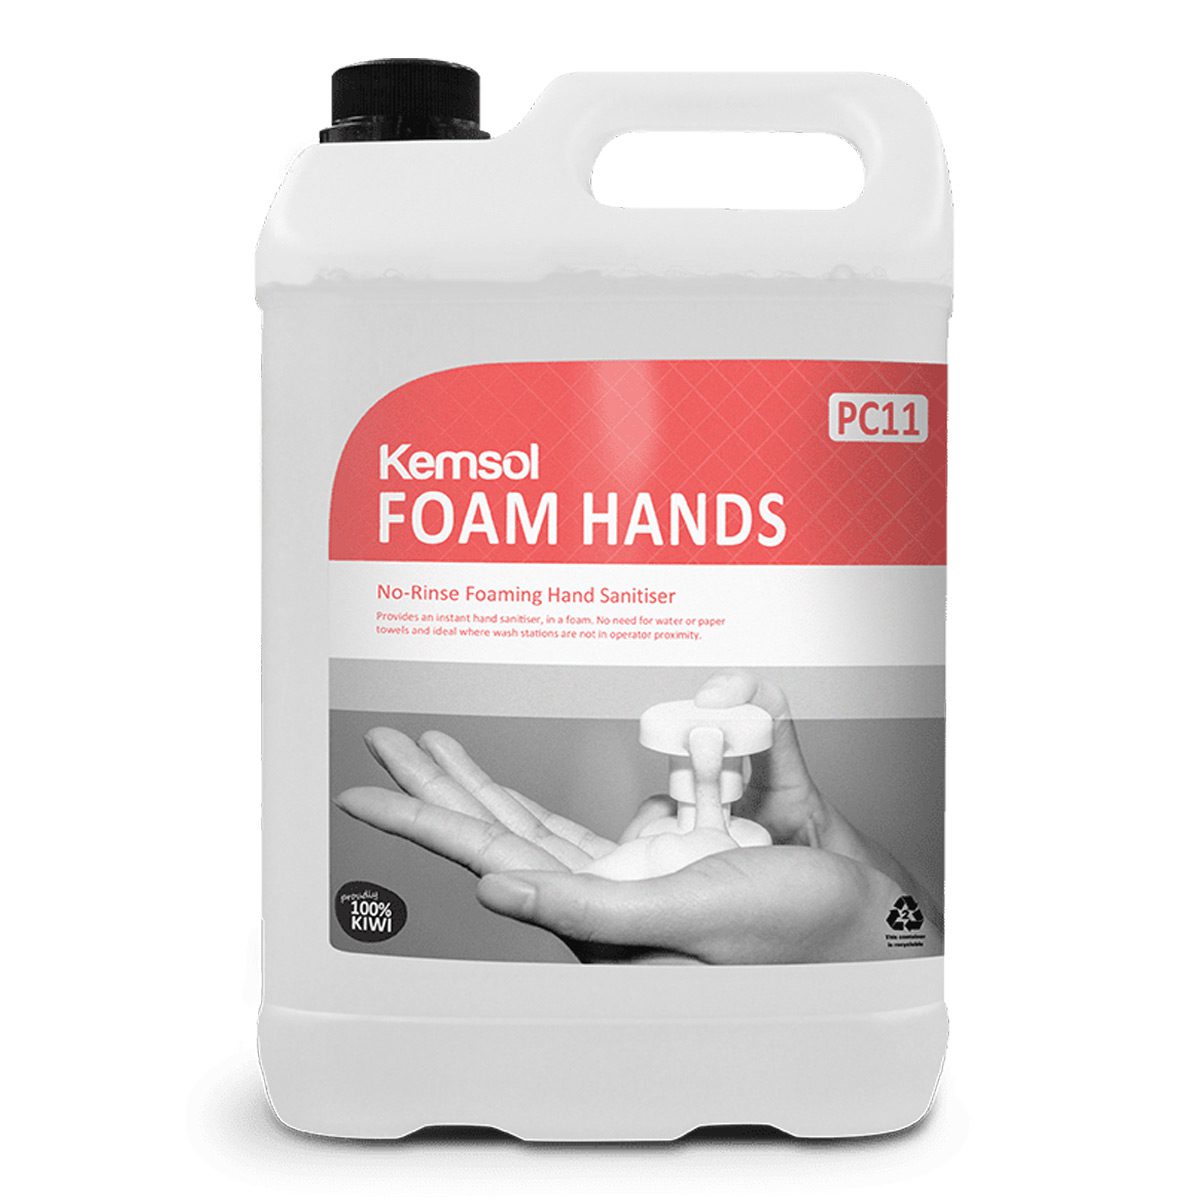 washroom-skincare-hand-sanitiser-kemsol-foam-hands-no-rinse-hand-sanitiser-5L-litre-instant-hand-sanitiser-no-need-for-water-or-paper-towels-alcohol-free-formula-vjs-distributors-KFOAM